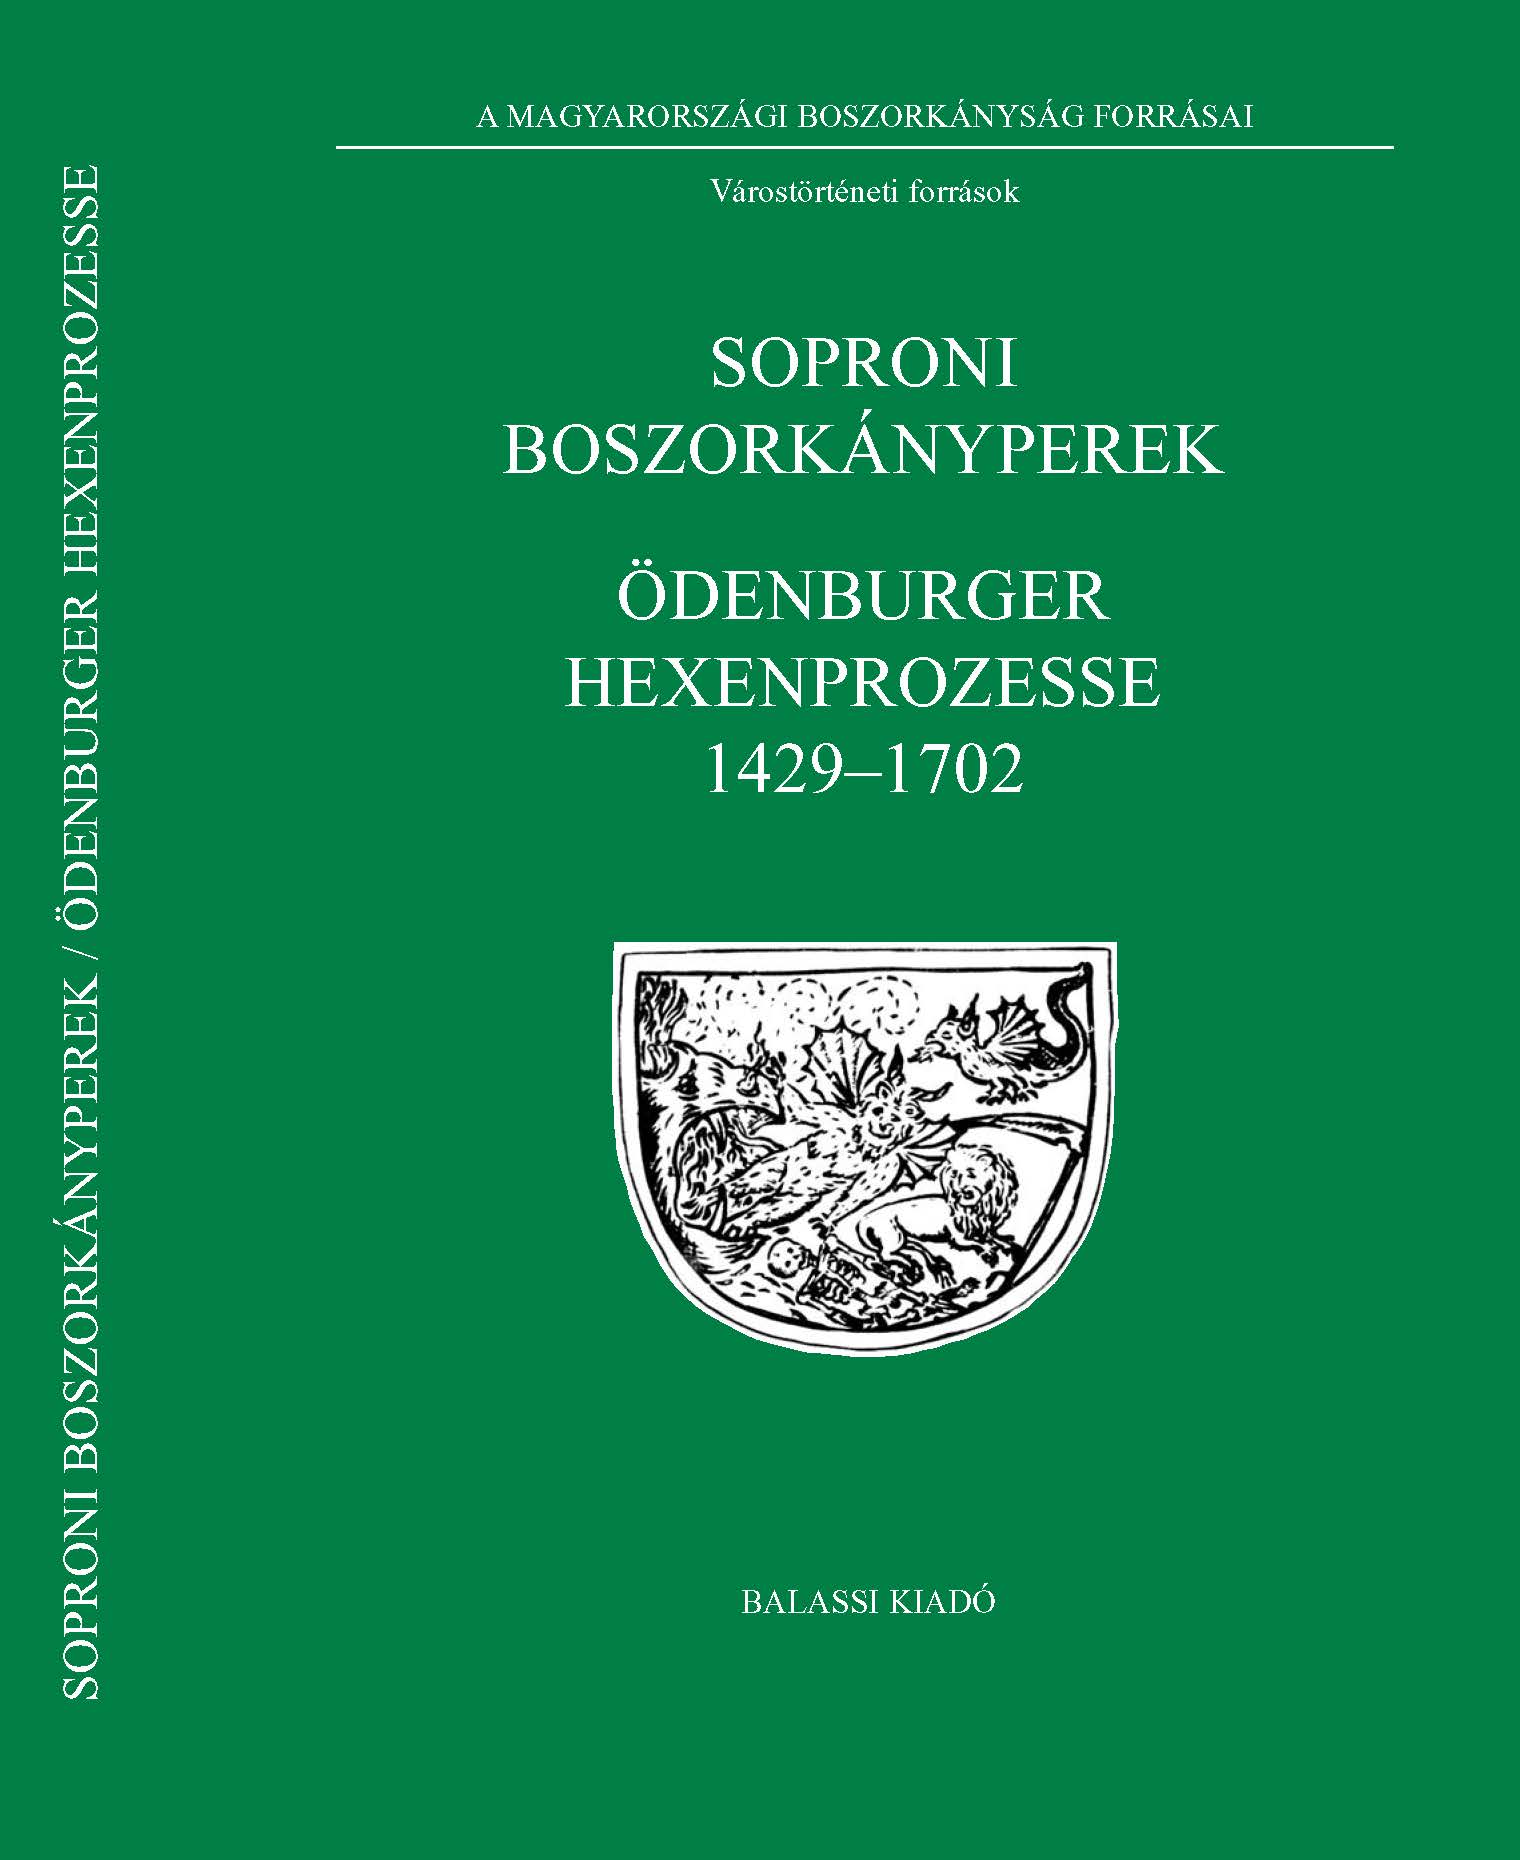 TÓTH G. P. NÉMETH I. Soproni boszorkányperek BOSZ III cover